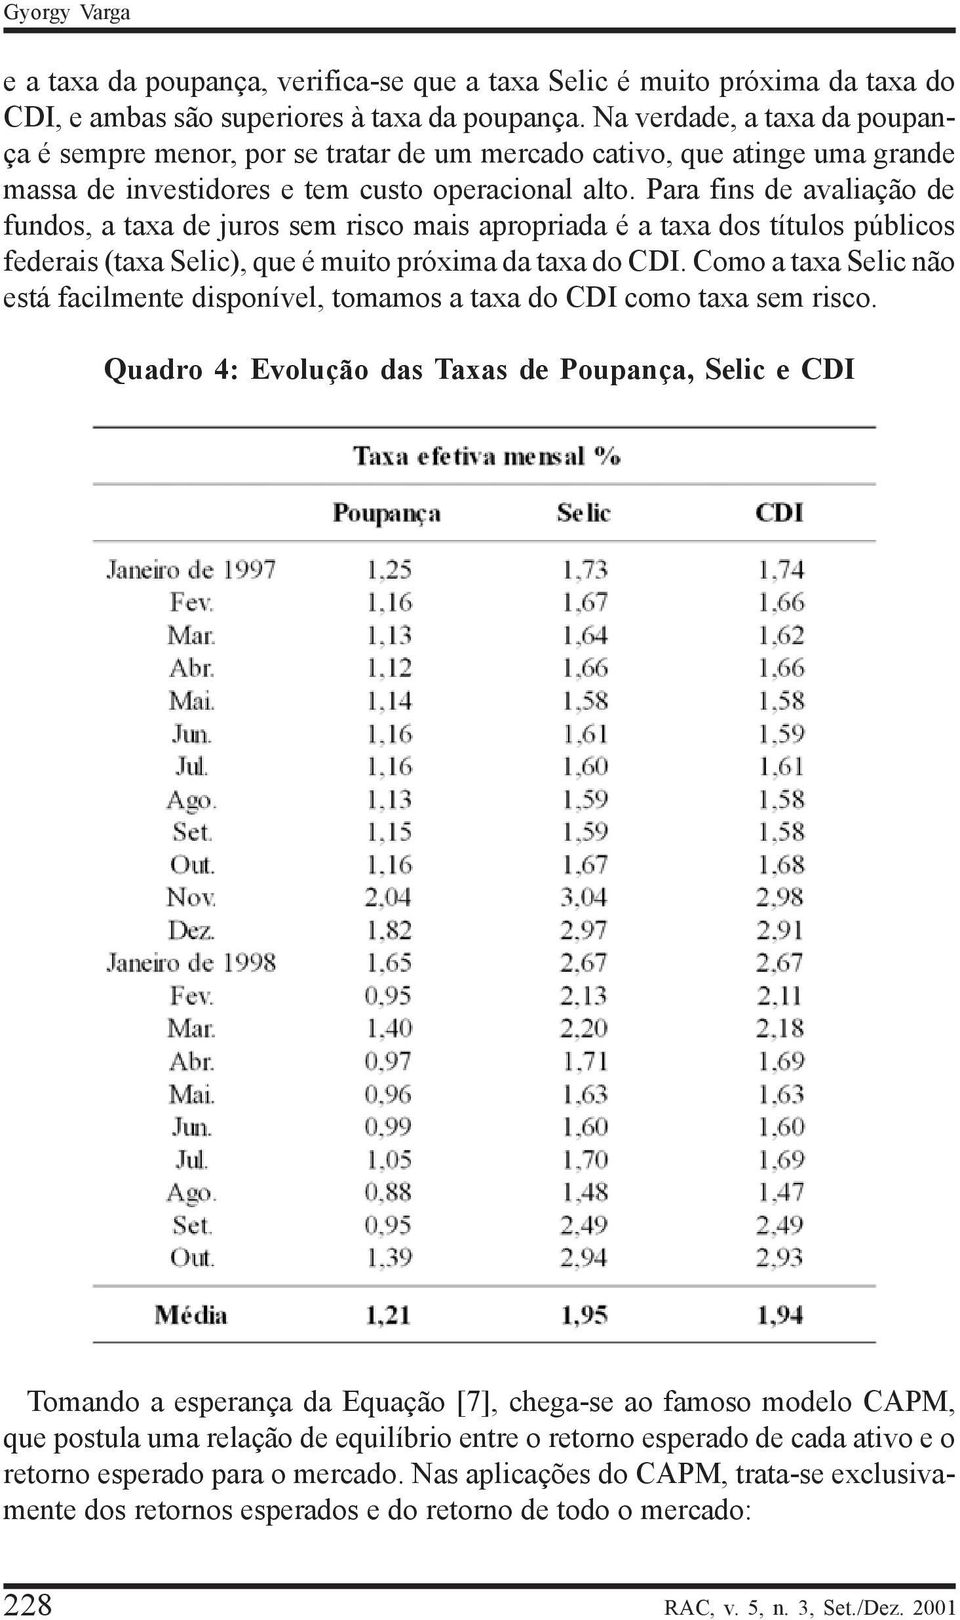 Paa fins de avaliação de fundos, a taxa de juos sem isco mais apopiada é a taxa dos títulos públicos fedeais (taxa Selic), que é muito póxima da taxa do DI.